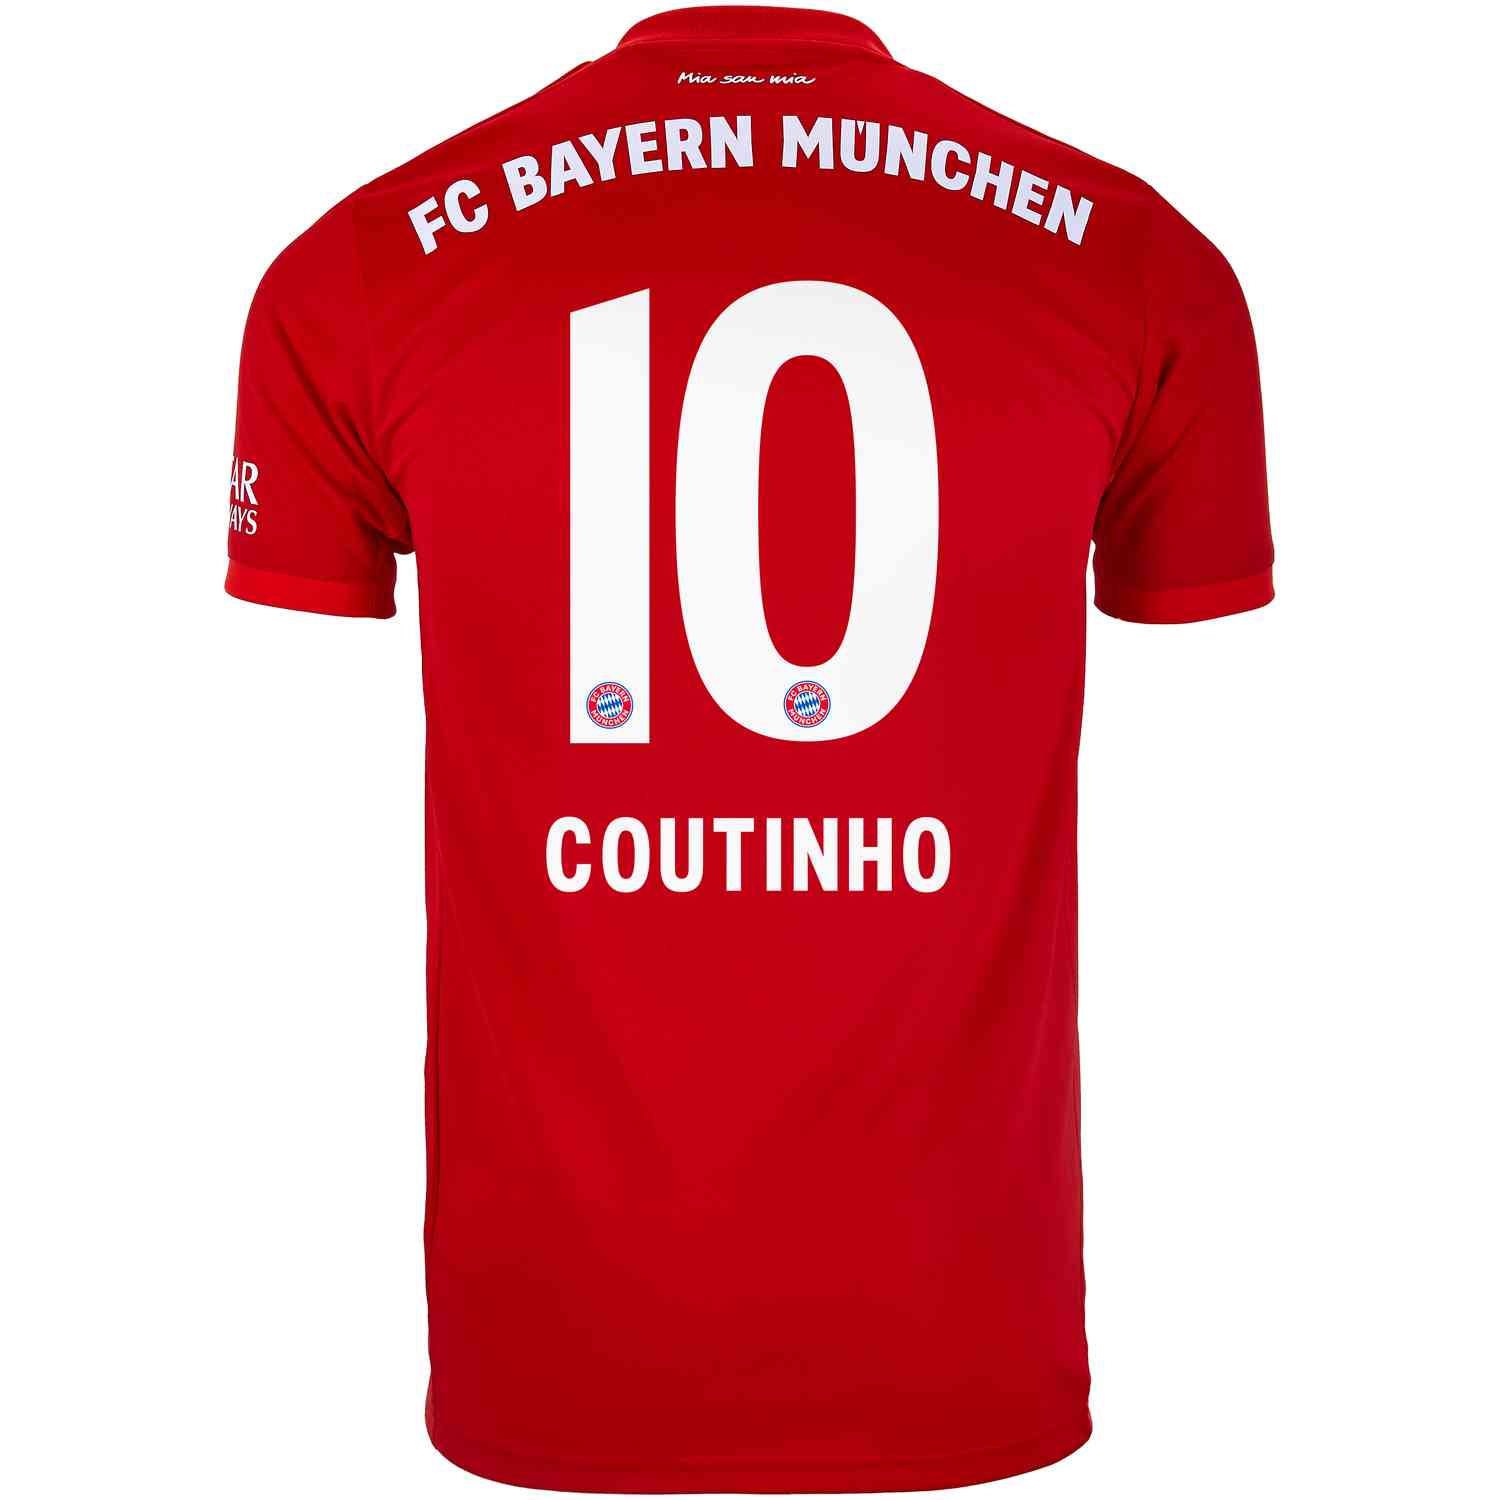 Bayern Munich Jersey Size Chart